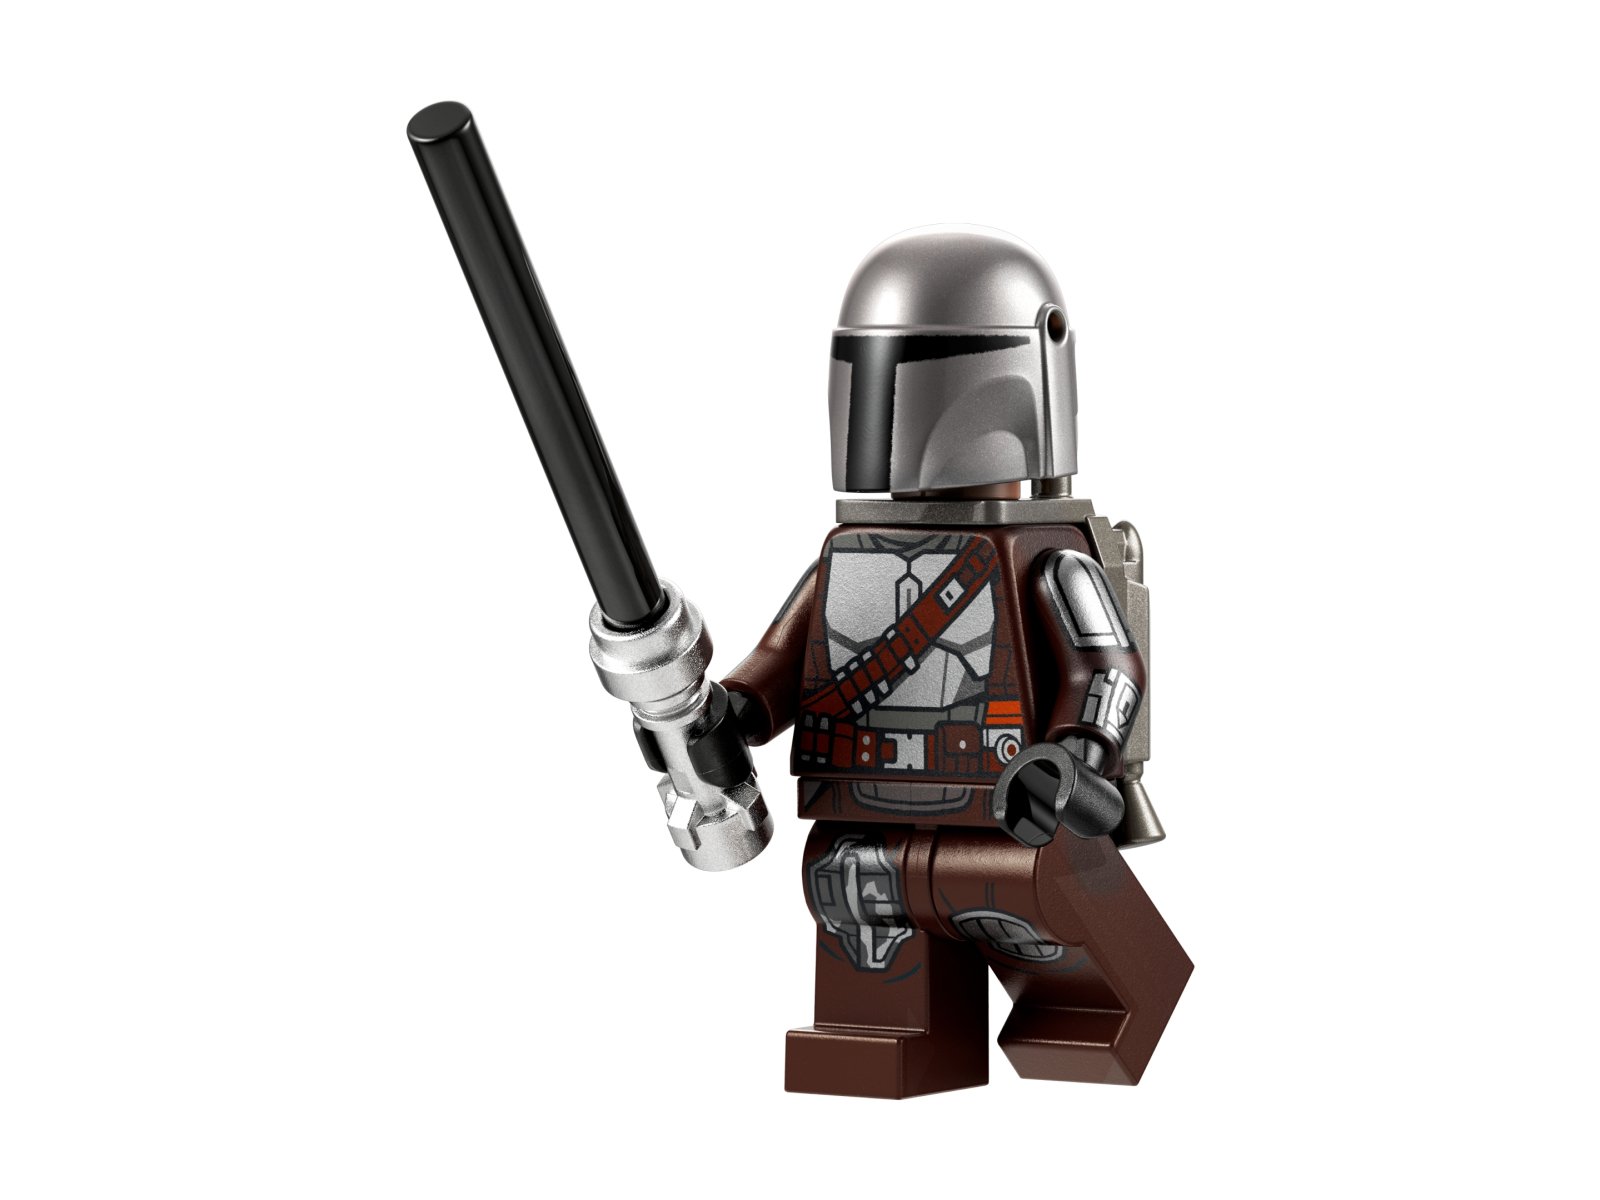 LEGO Star Wars Myśliwiec N-1™ Mandalorianina 75325